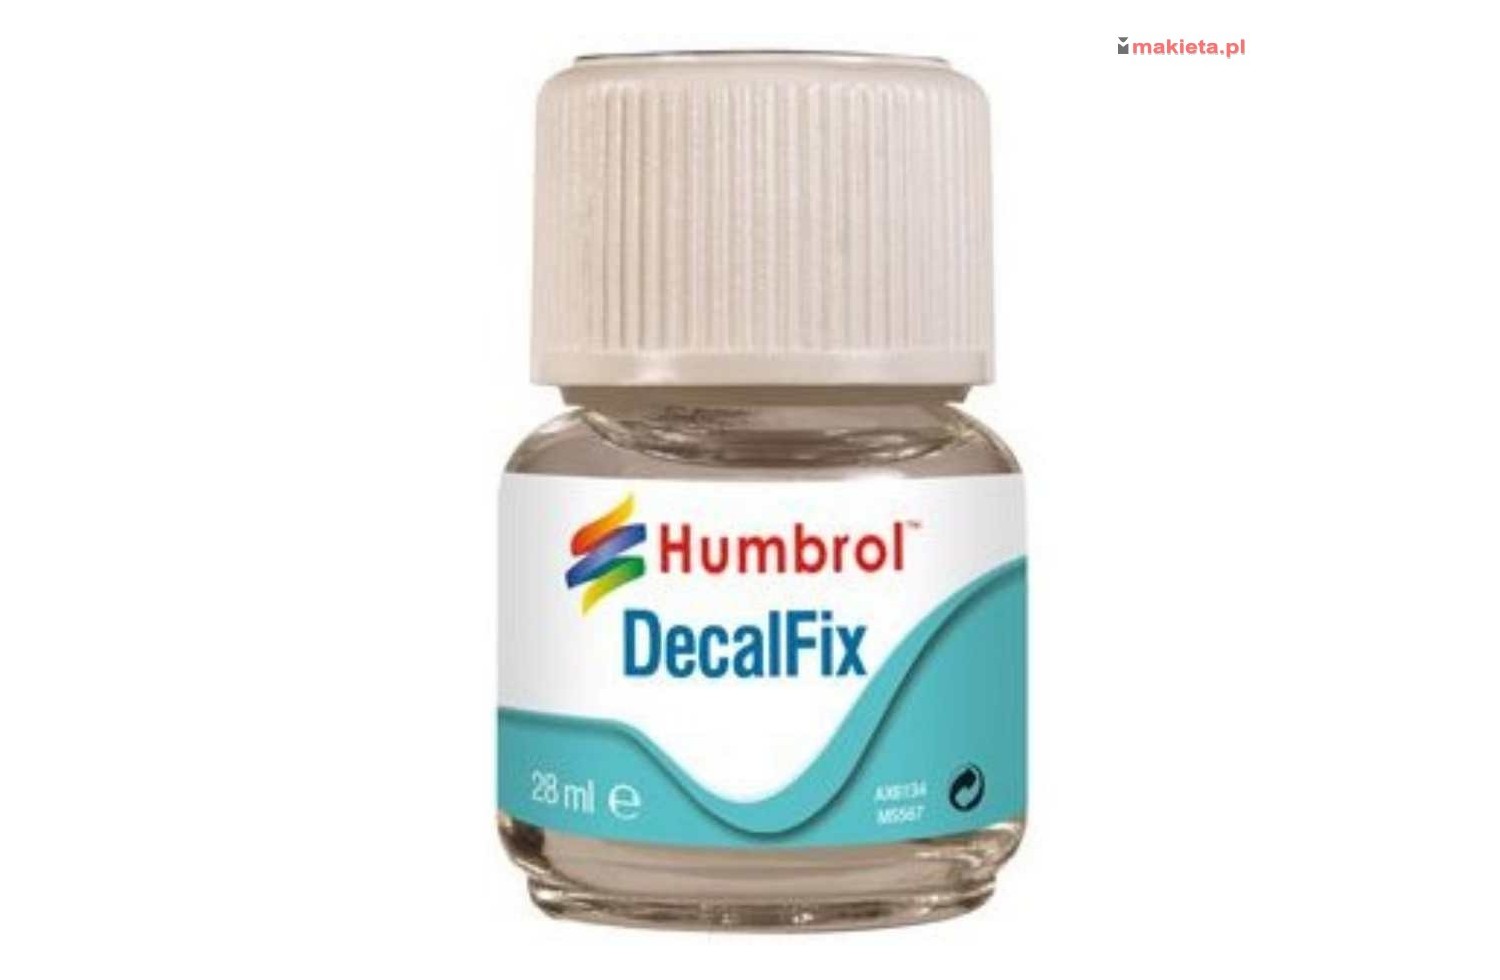 Humbrol Decalfix 28 ml. Płyn pod kalkomanię. AC6134 HD